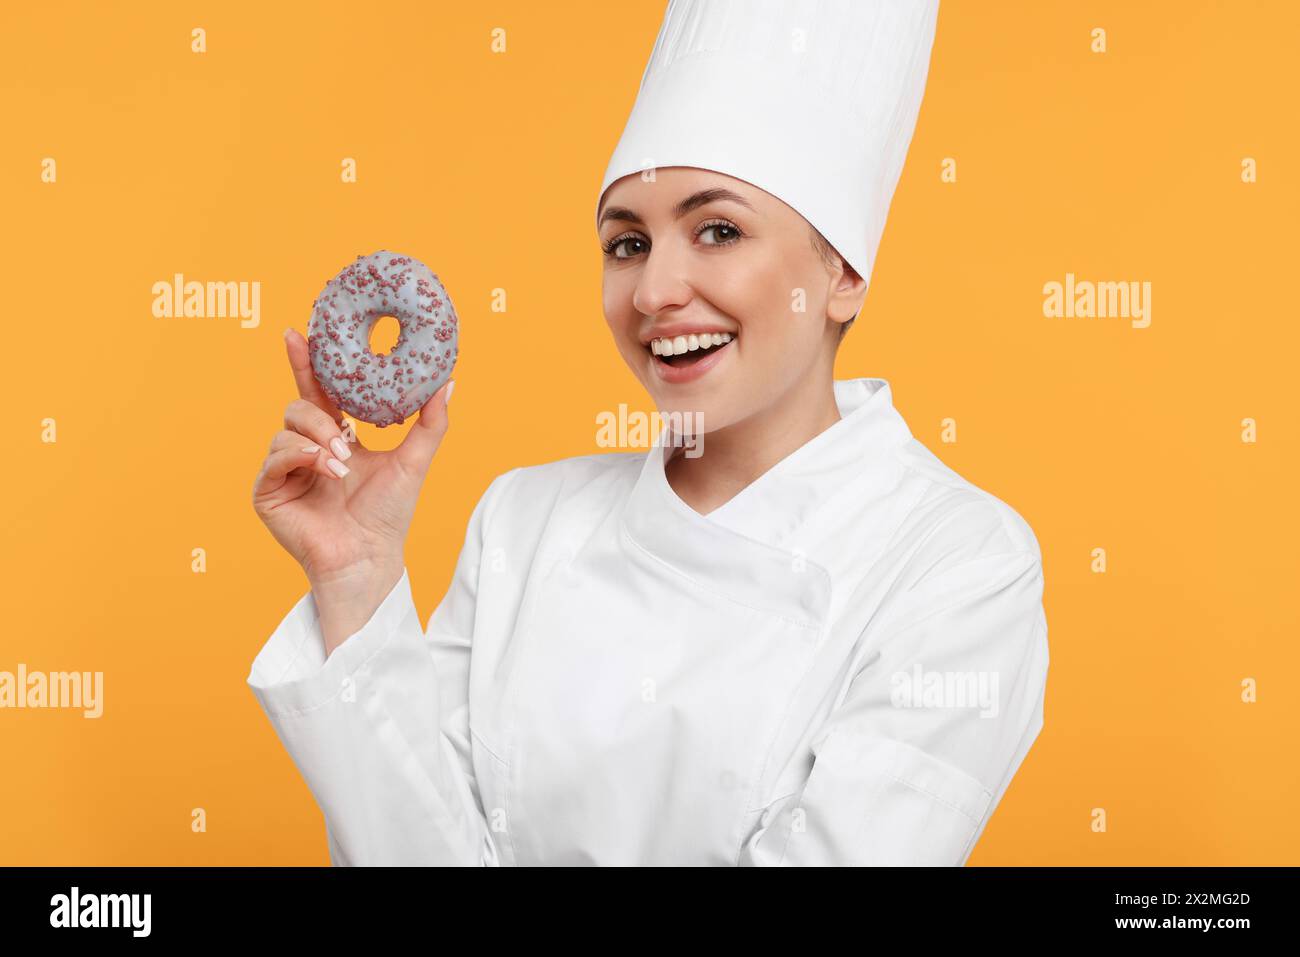 Glücklicher professioneller Konditor in Uniform mit köstlichem Donut auf gelbem Hintergrund Stockfoto